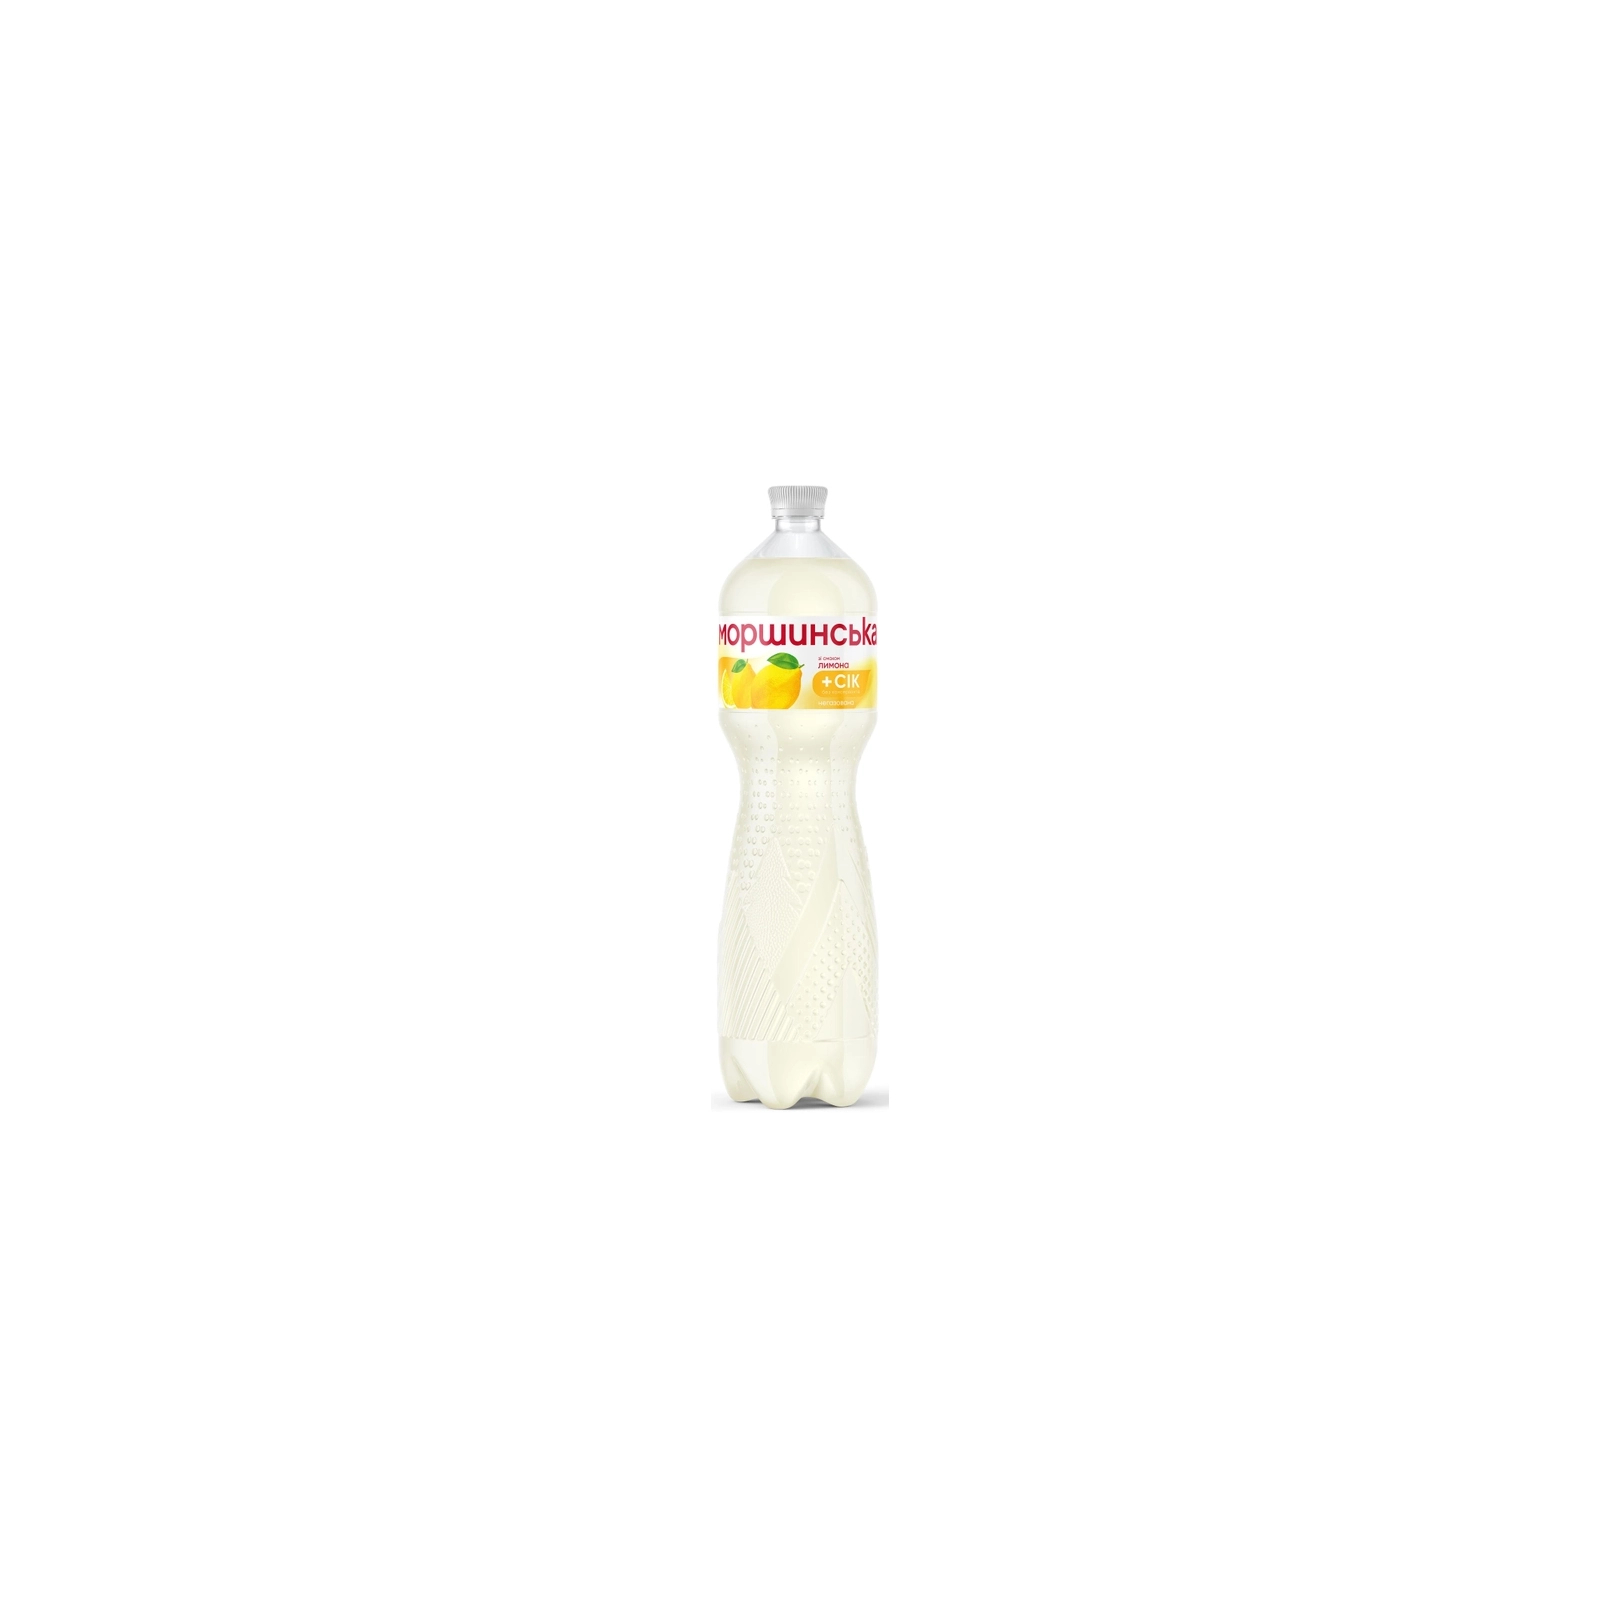 Напиток Моршинська сокосодержащий негазированный со вкусом лимона 1.5 л (4820017002561) изображение 2